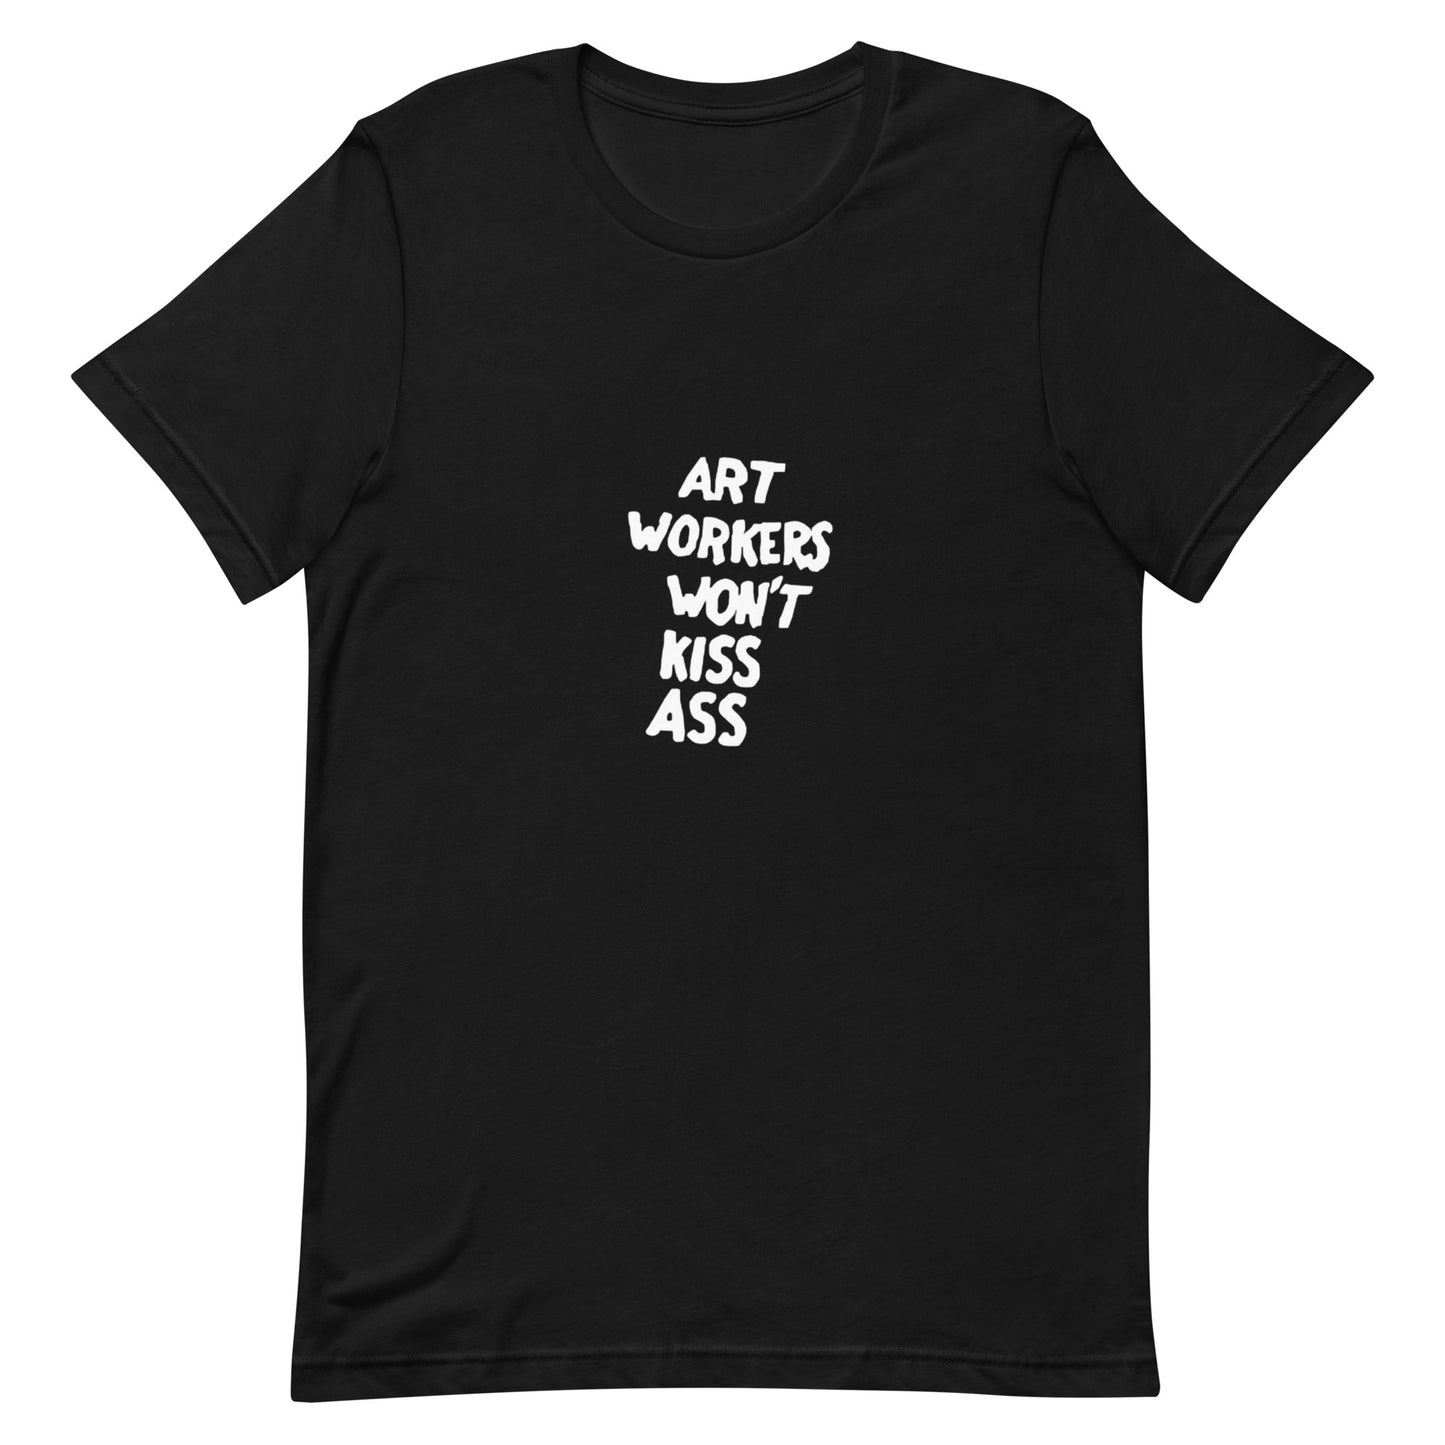 AWC Art Workers Won't Kiss Ass tee